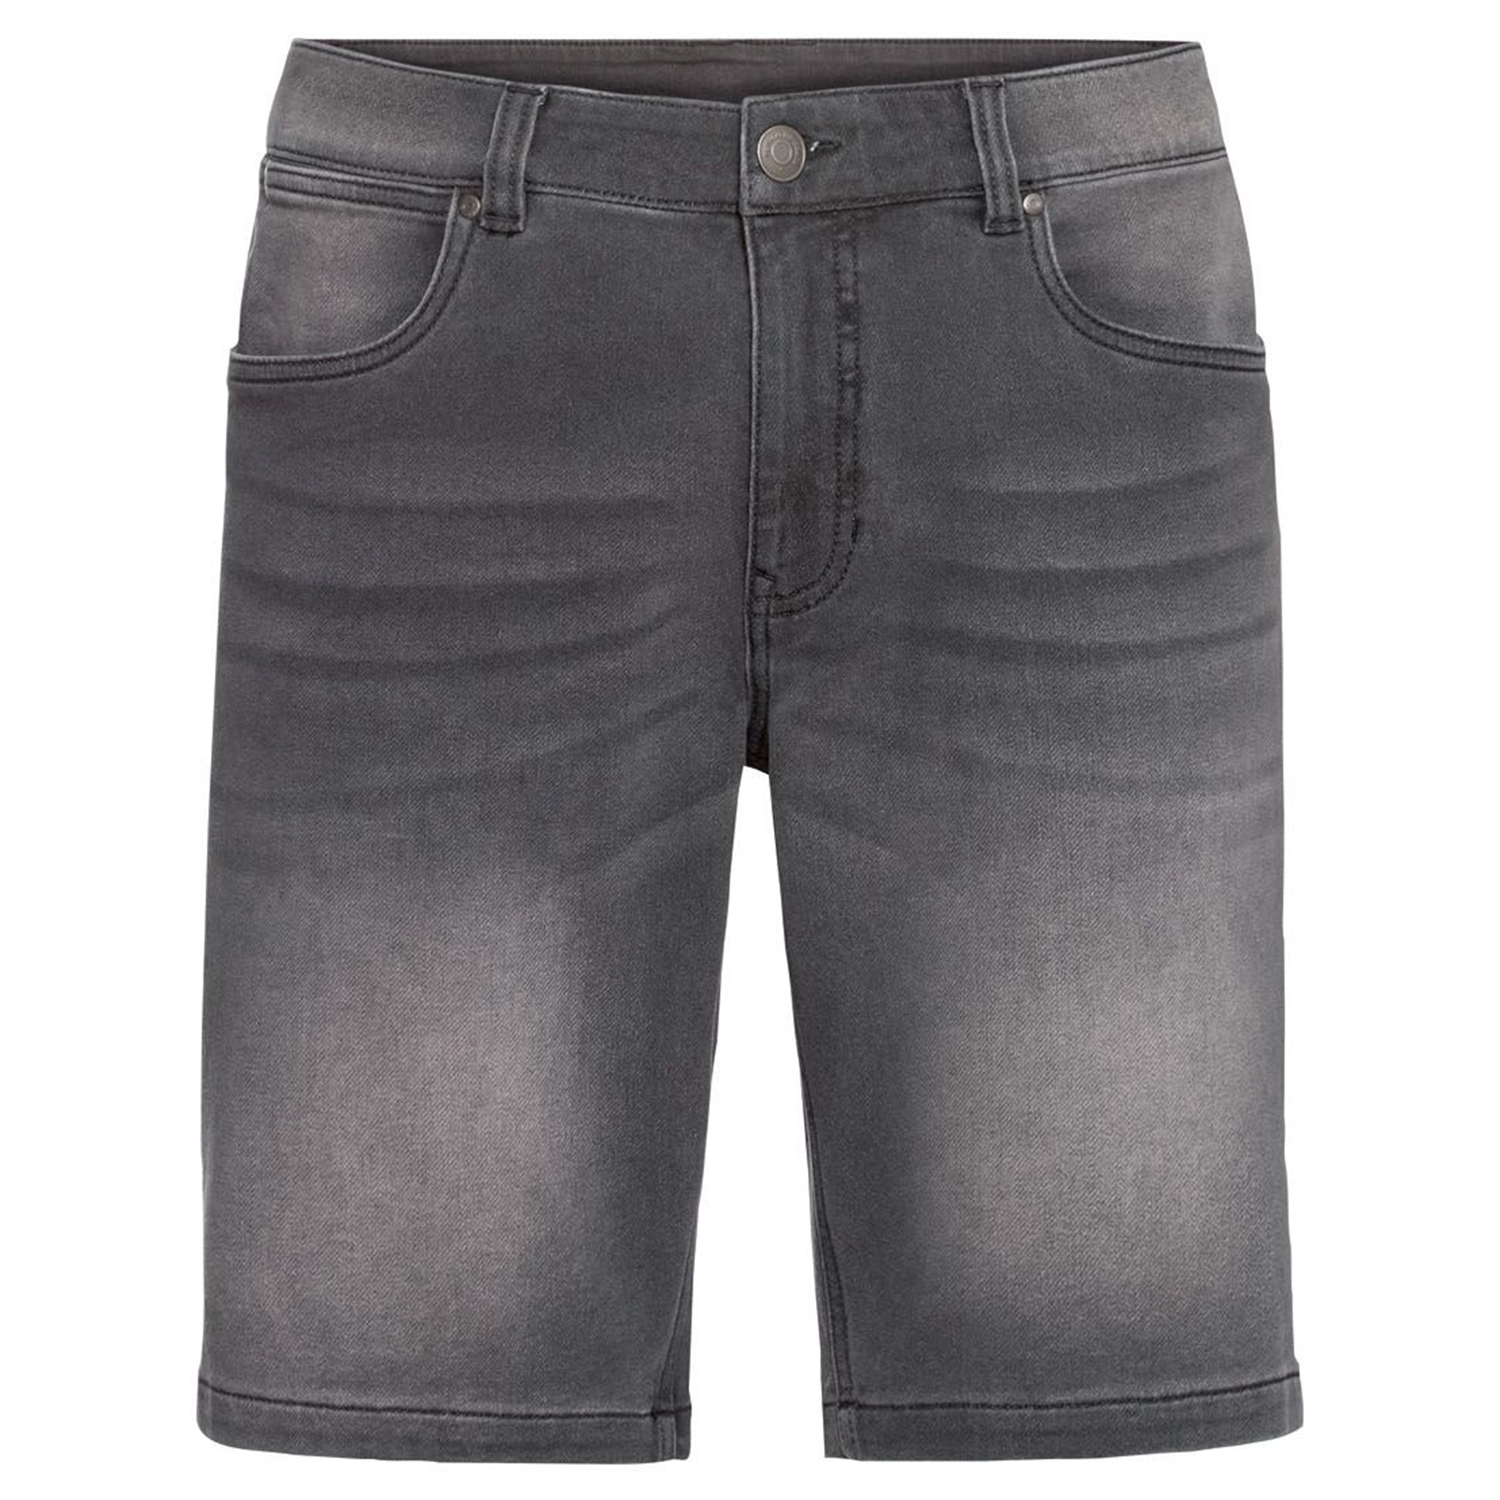 نکته خرید - قیمت روز شلوارک مردانه لیورجی مدل جین کژوال کد Seri2022blk رنگ مشکی خرید